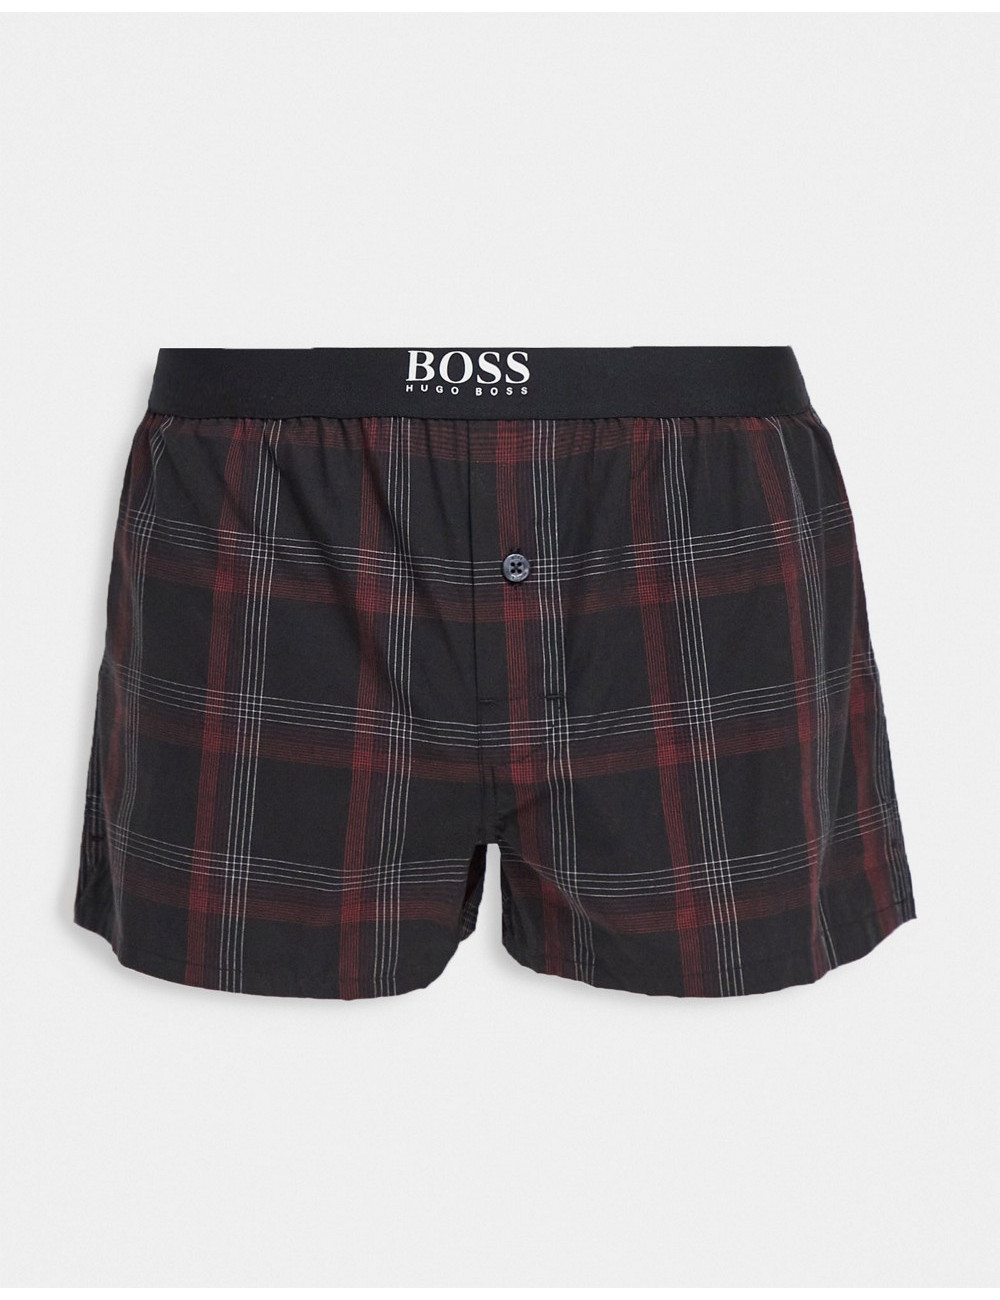 BOSS Bodywear lounge shorts...